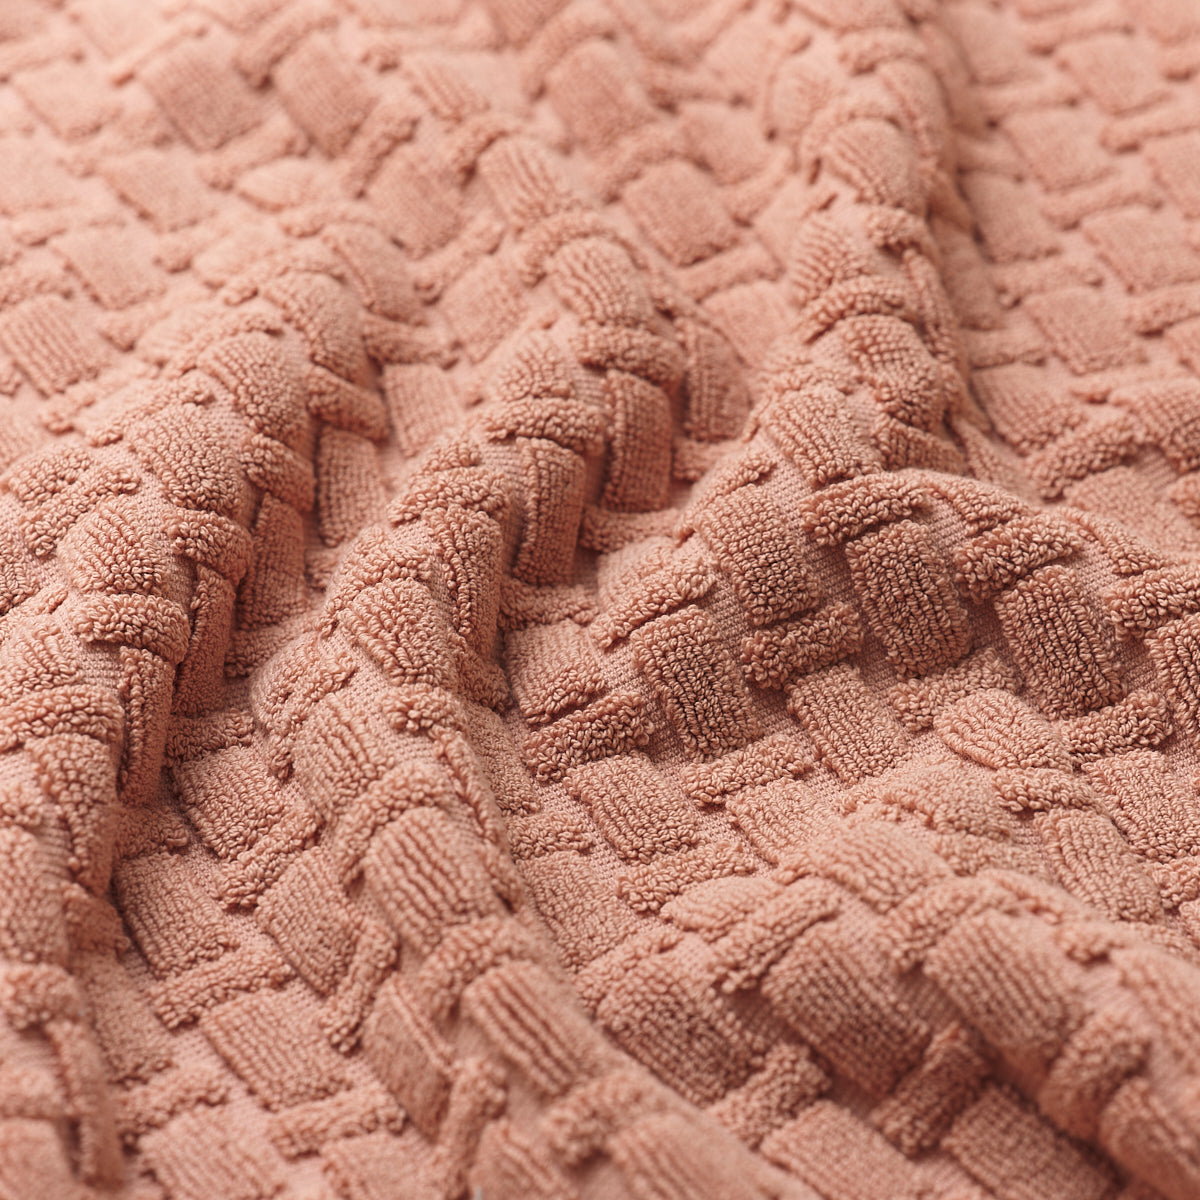 Creme Caramel Basketweave Cotton Fabric Detail